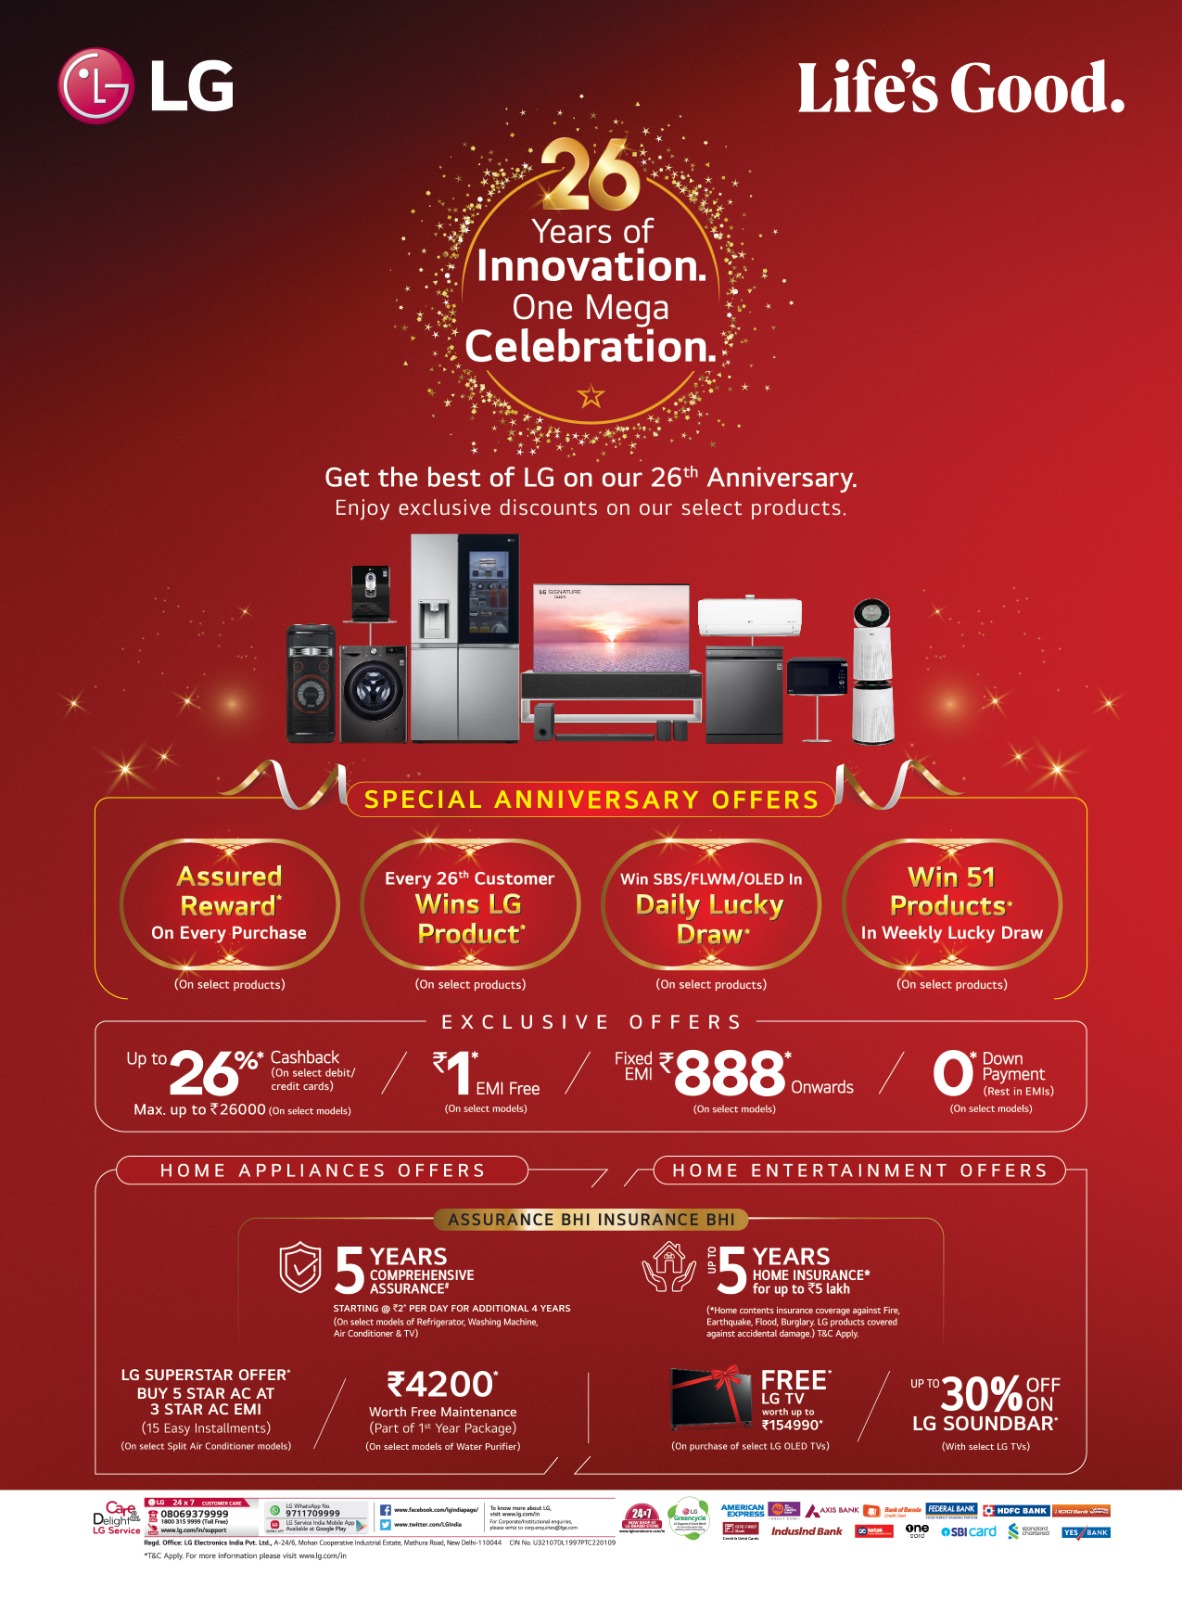 एलजी इलेक्ट्रॉनिक्स इंडिया अपने रोमांचक अभियान के साथ इनोवेशन के 26 साल 